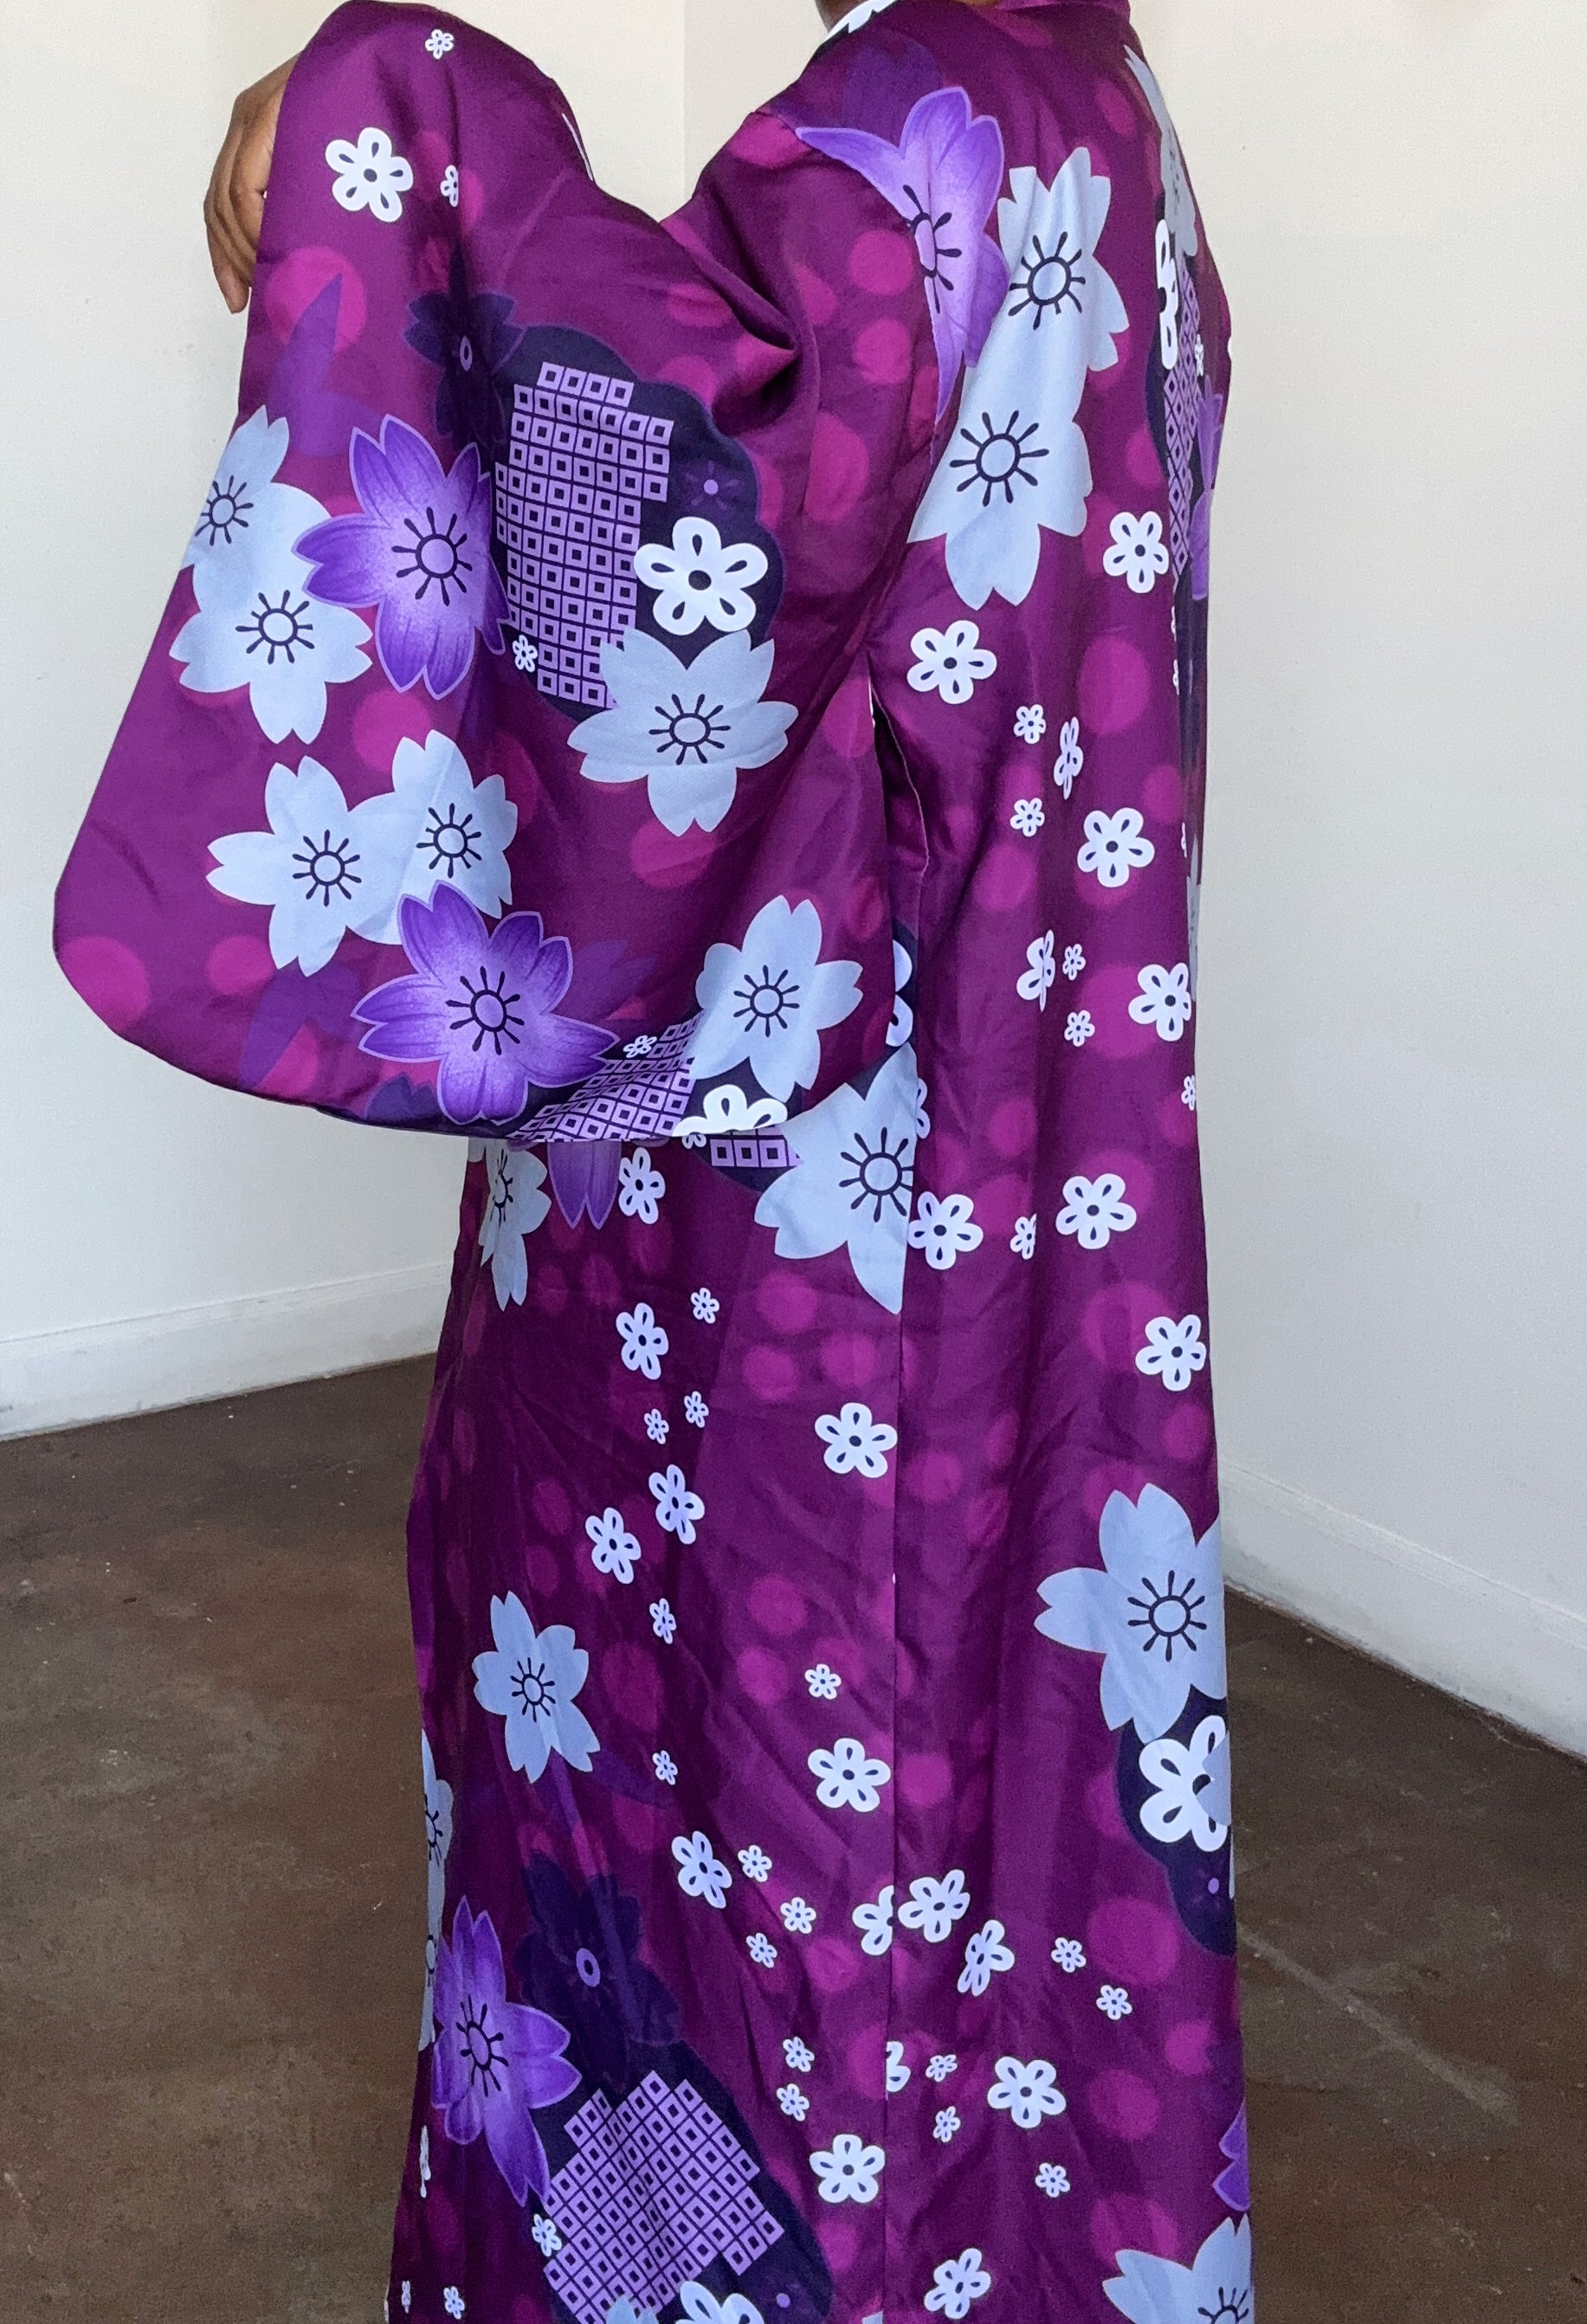 Jackie Kimono | One Size | S-XL